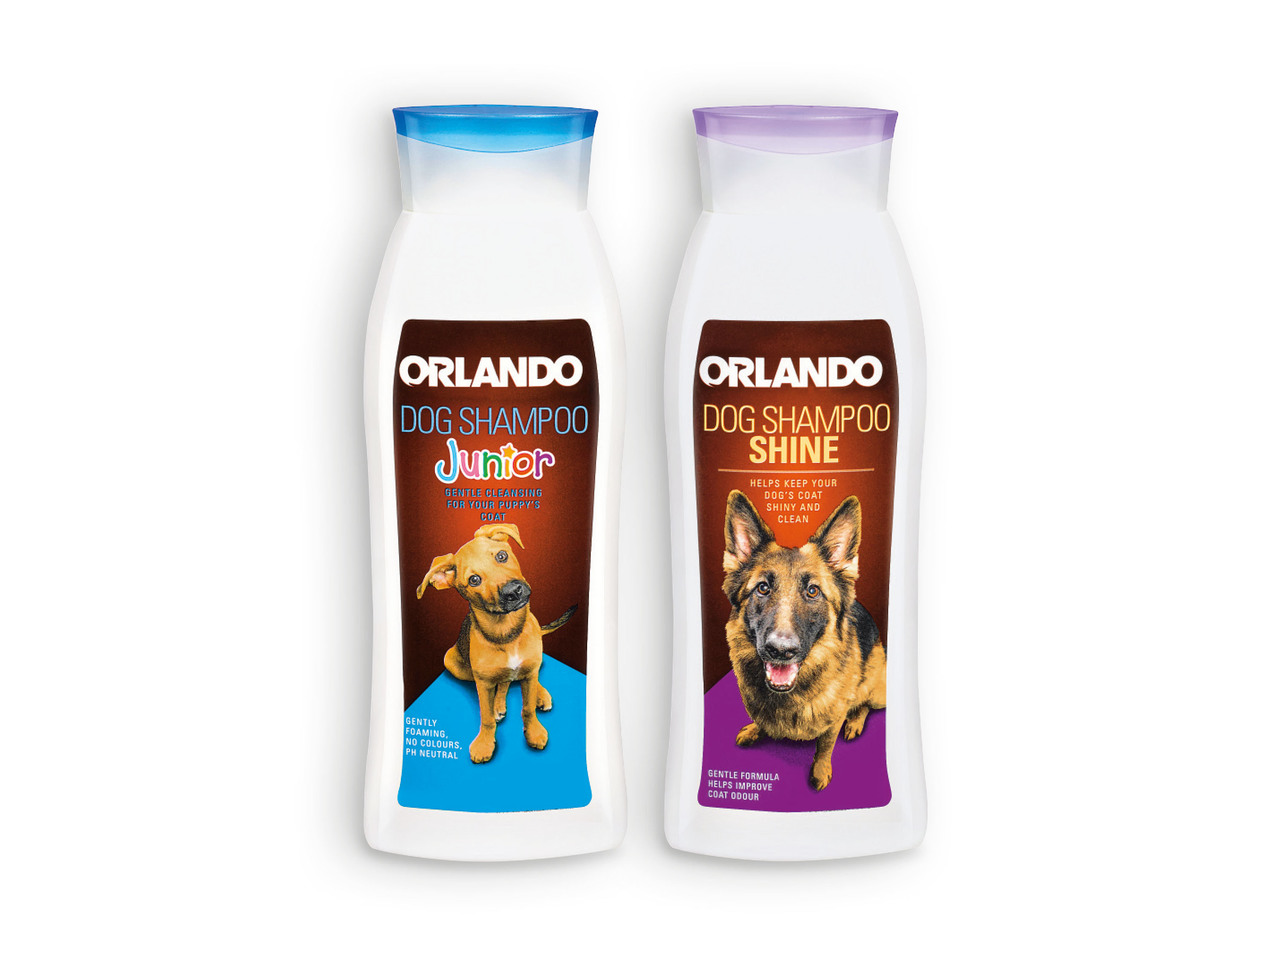 ORLANDO(R) Champô para Cães